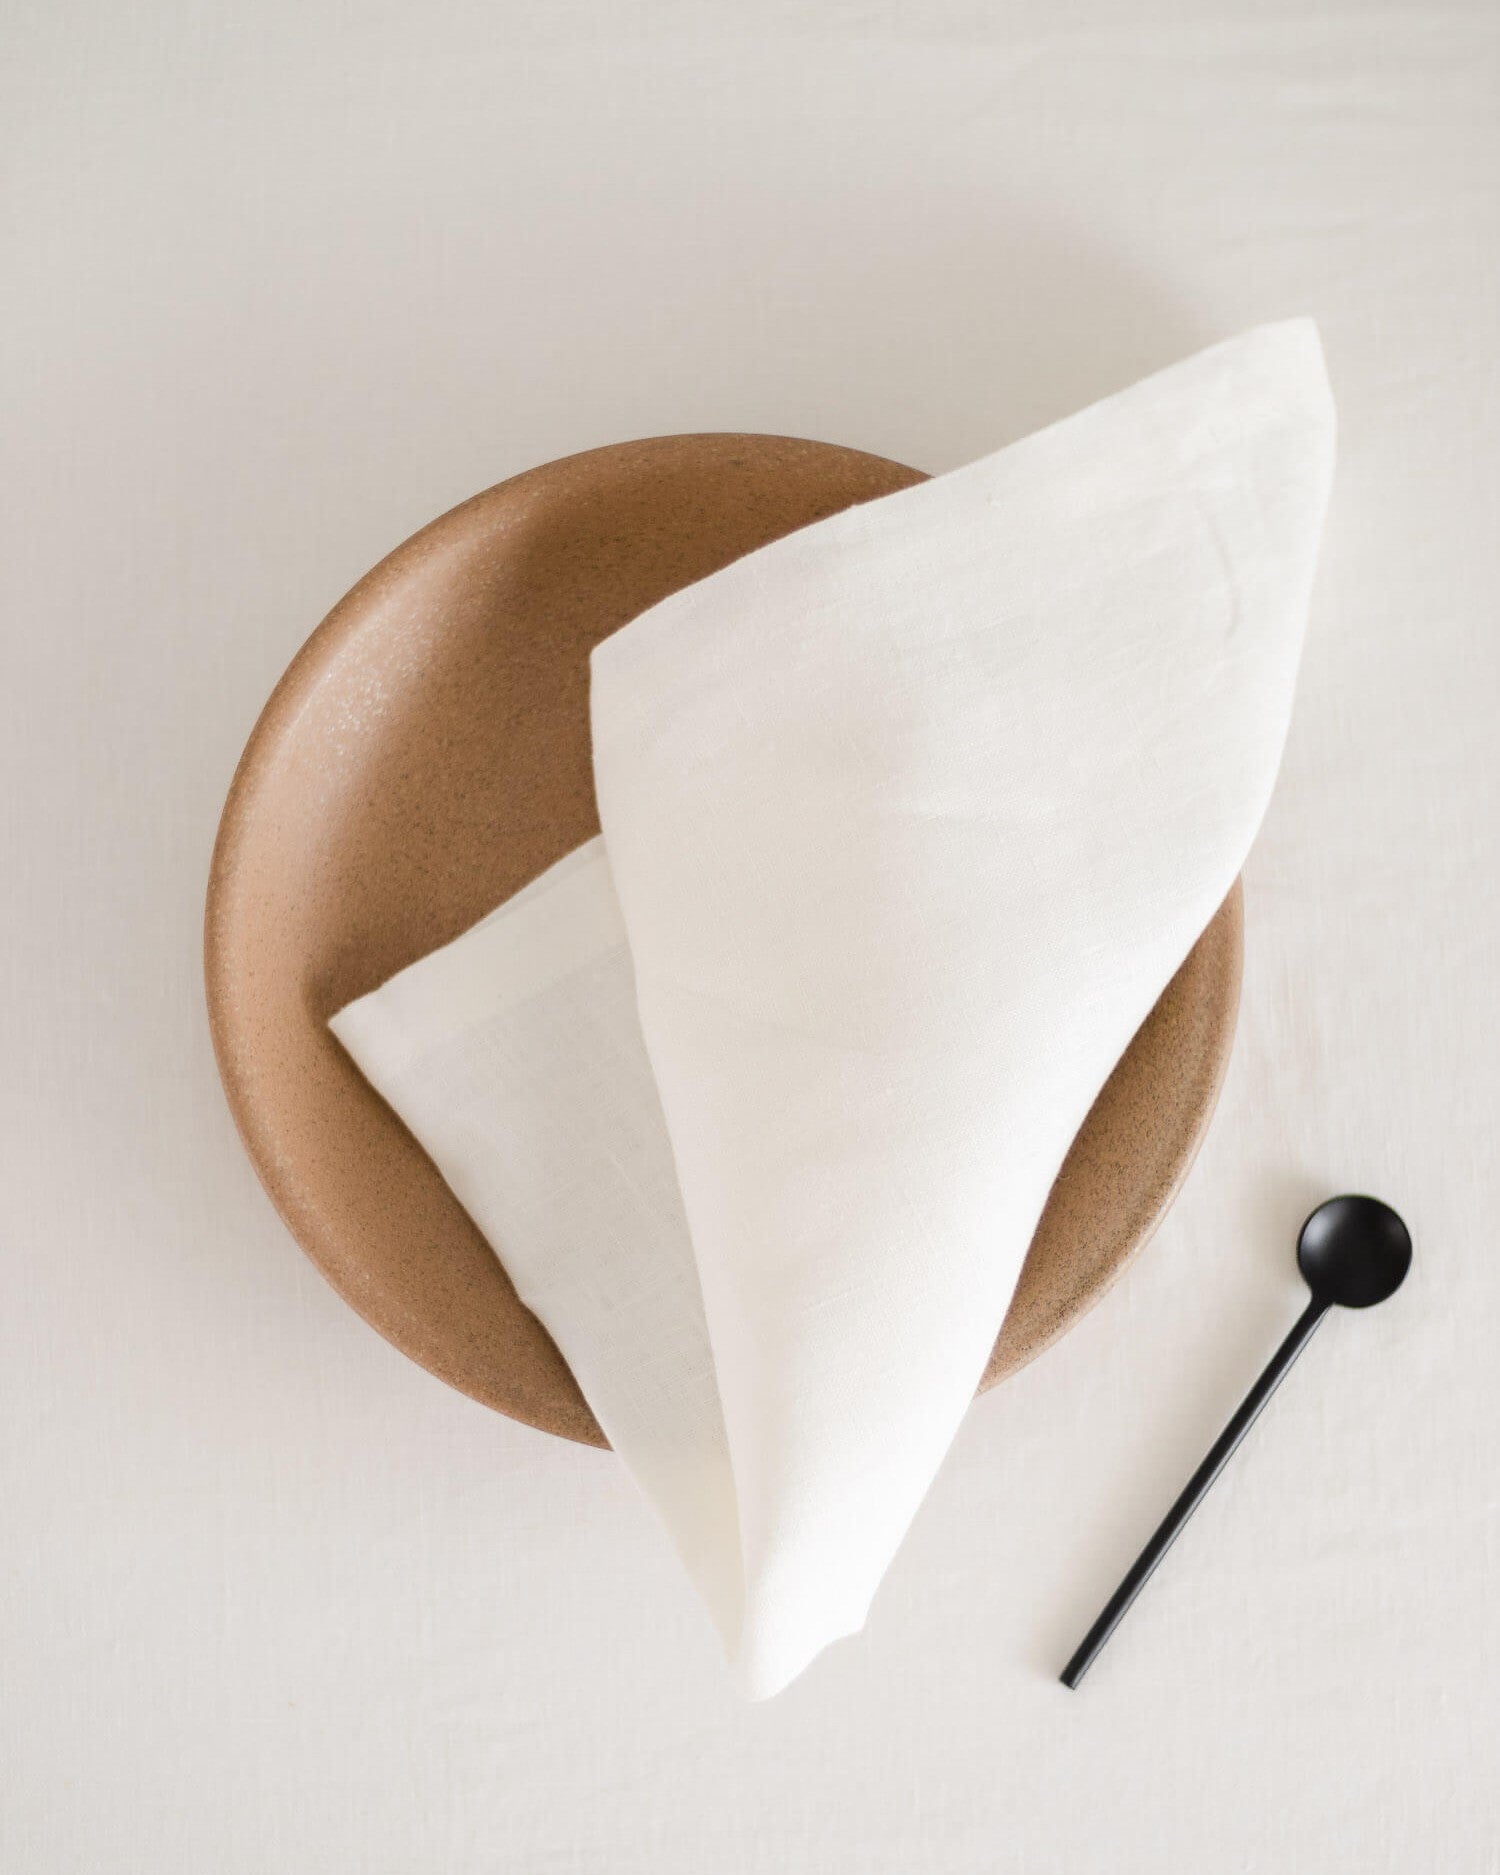 100% Pure Linen Table Napkins / Tea Towels